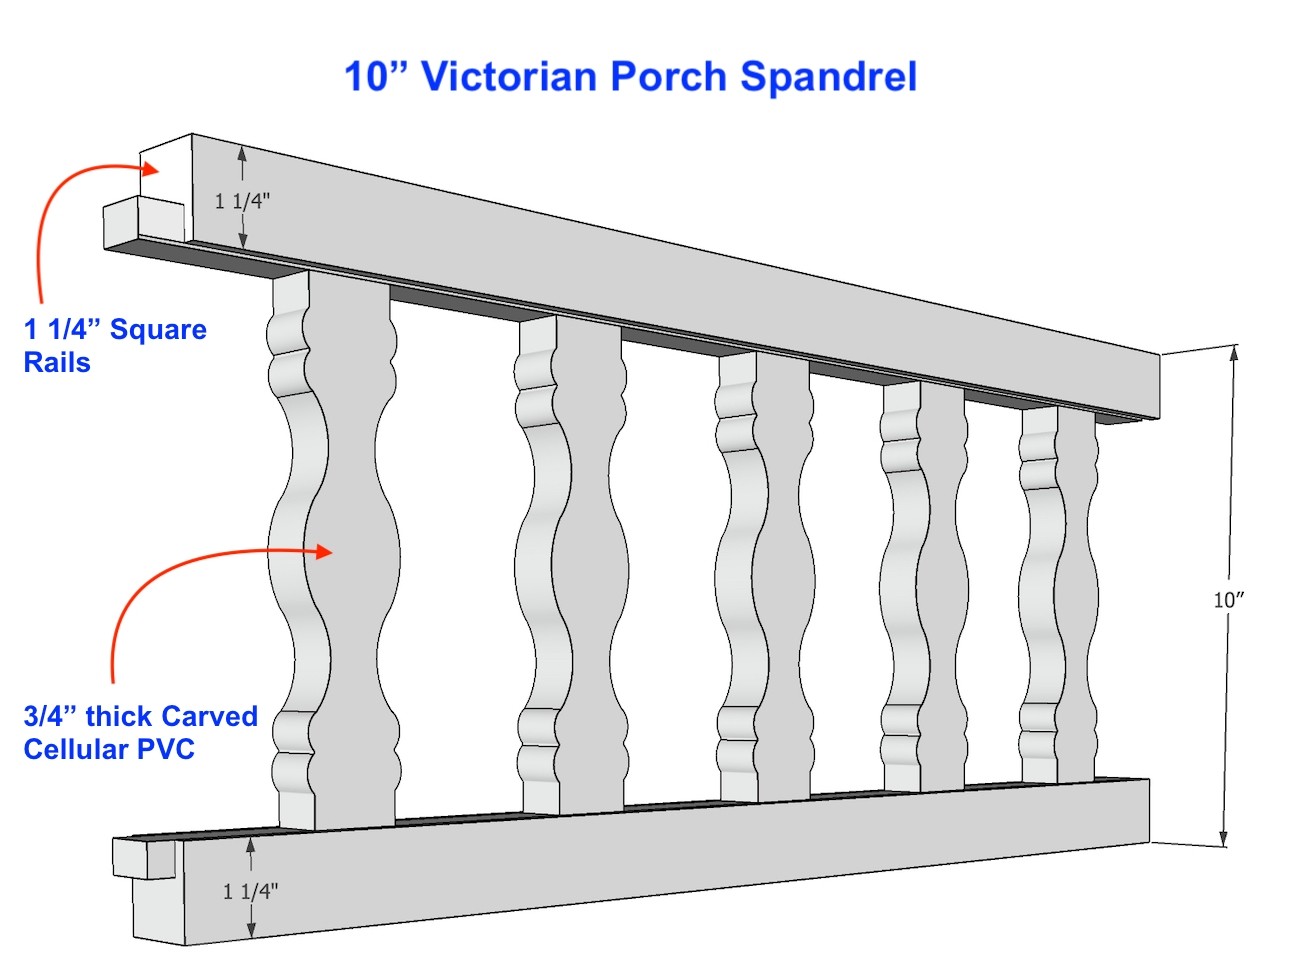 10" Victorian Porch Spandrel